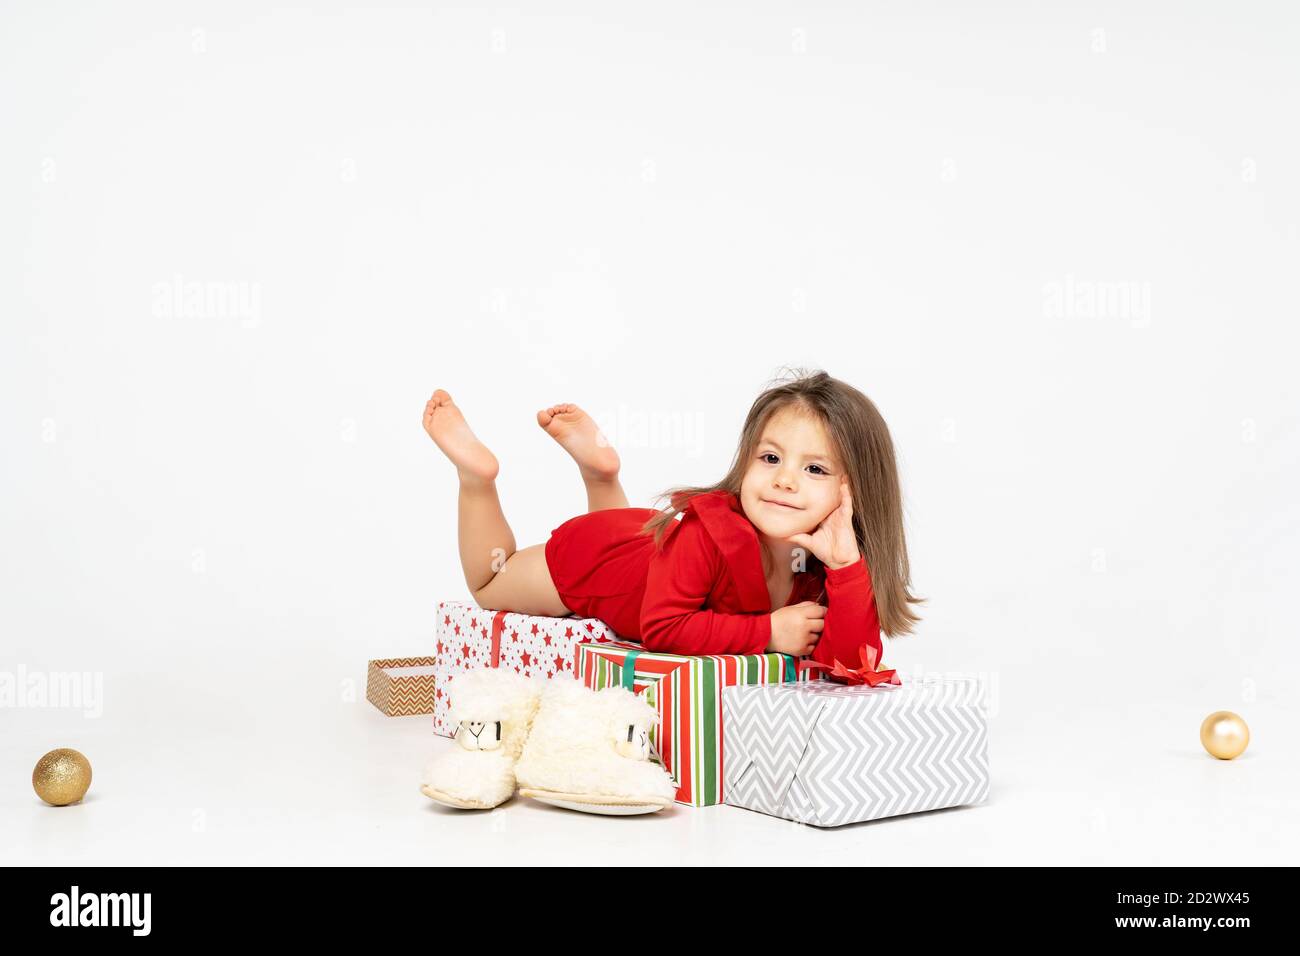 Neujahr Bild: Ein kleines Mädchen liegt auf den Geschenken, die der Weihnachtsmann ihr mitgebracht hat Stockfoto